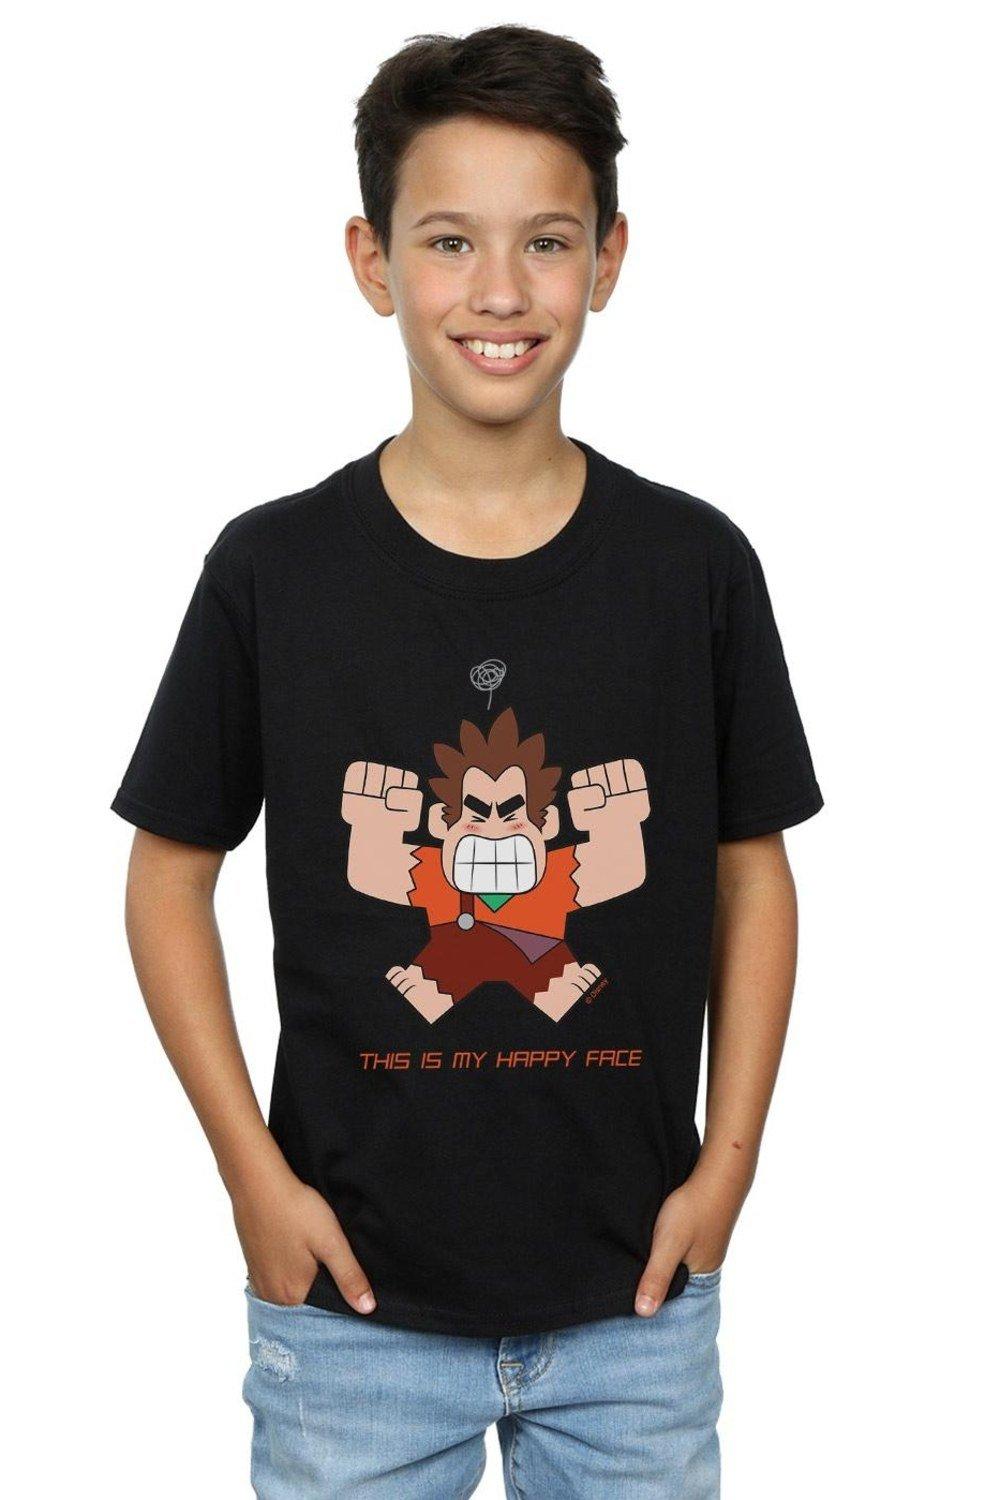 Wreck It Ralph Happy Face T-Shirt